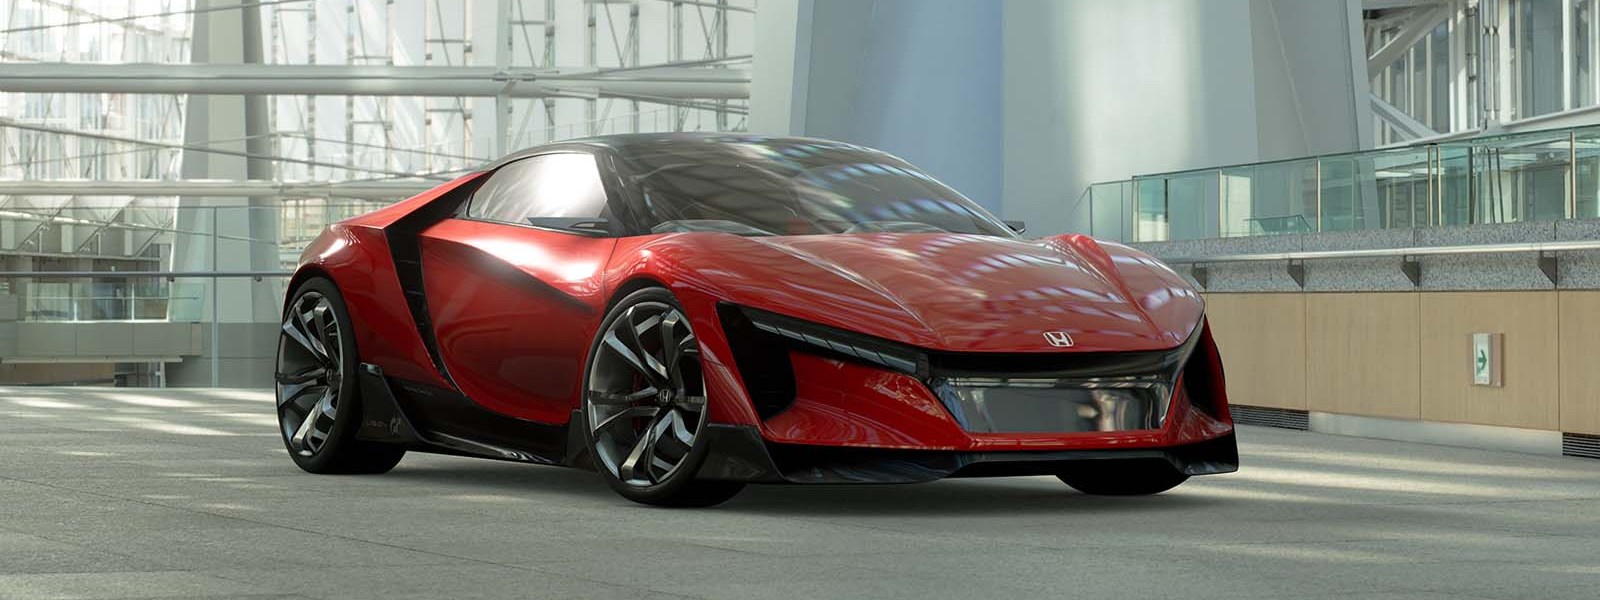 Sports Vision Gran Turismo - concept xe thể thao của Honda, động cơ 2.0 tăng áp, hộp số ly hợp kép